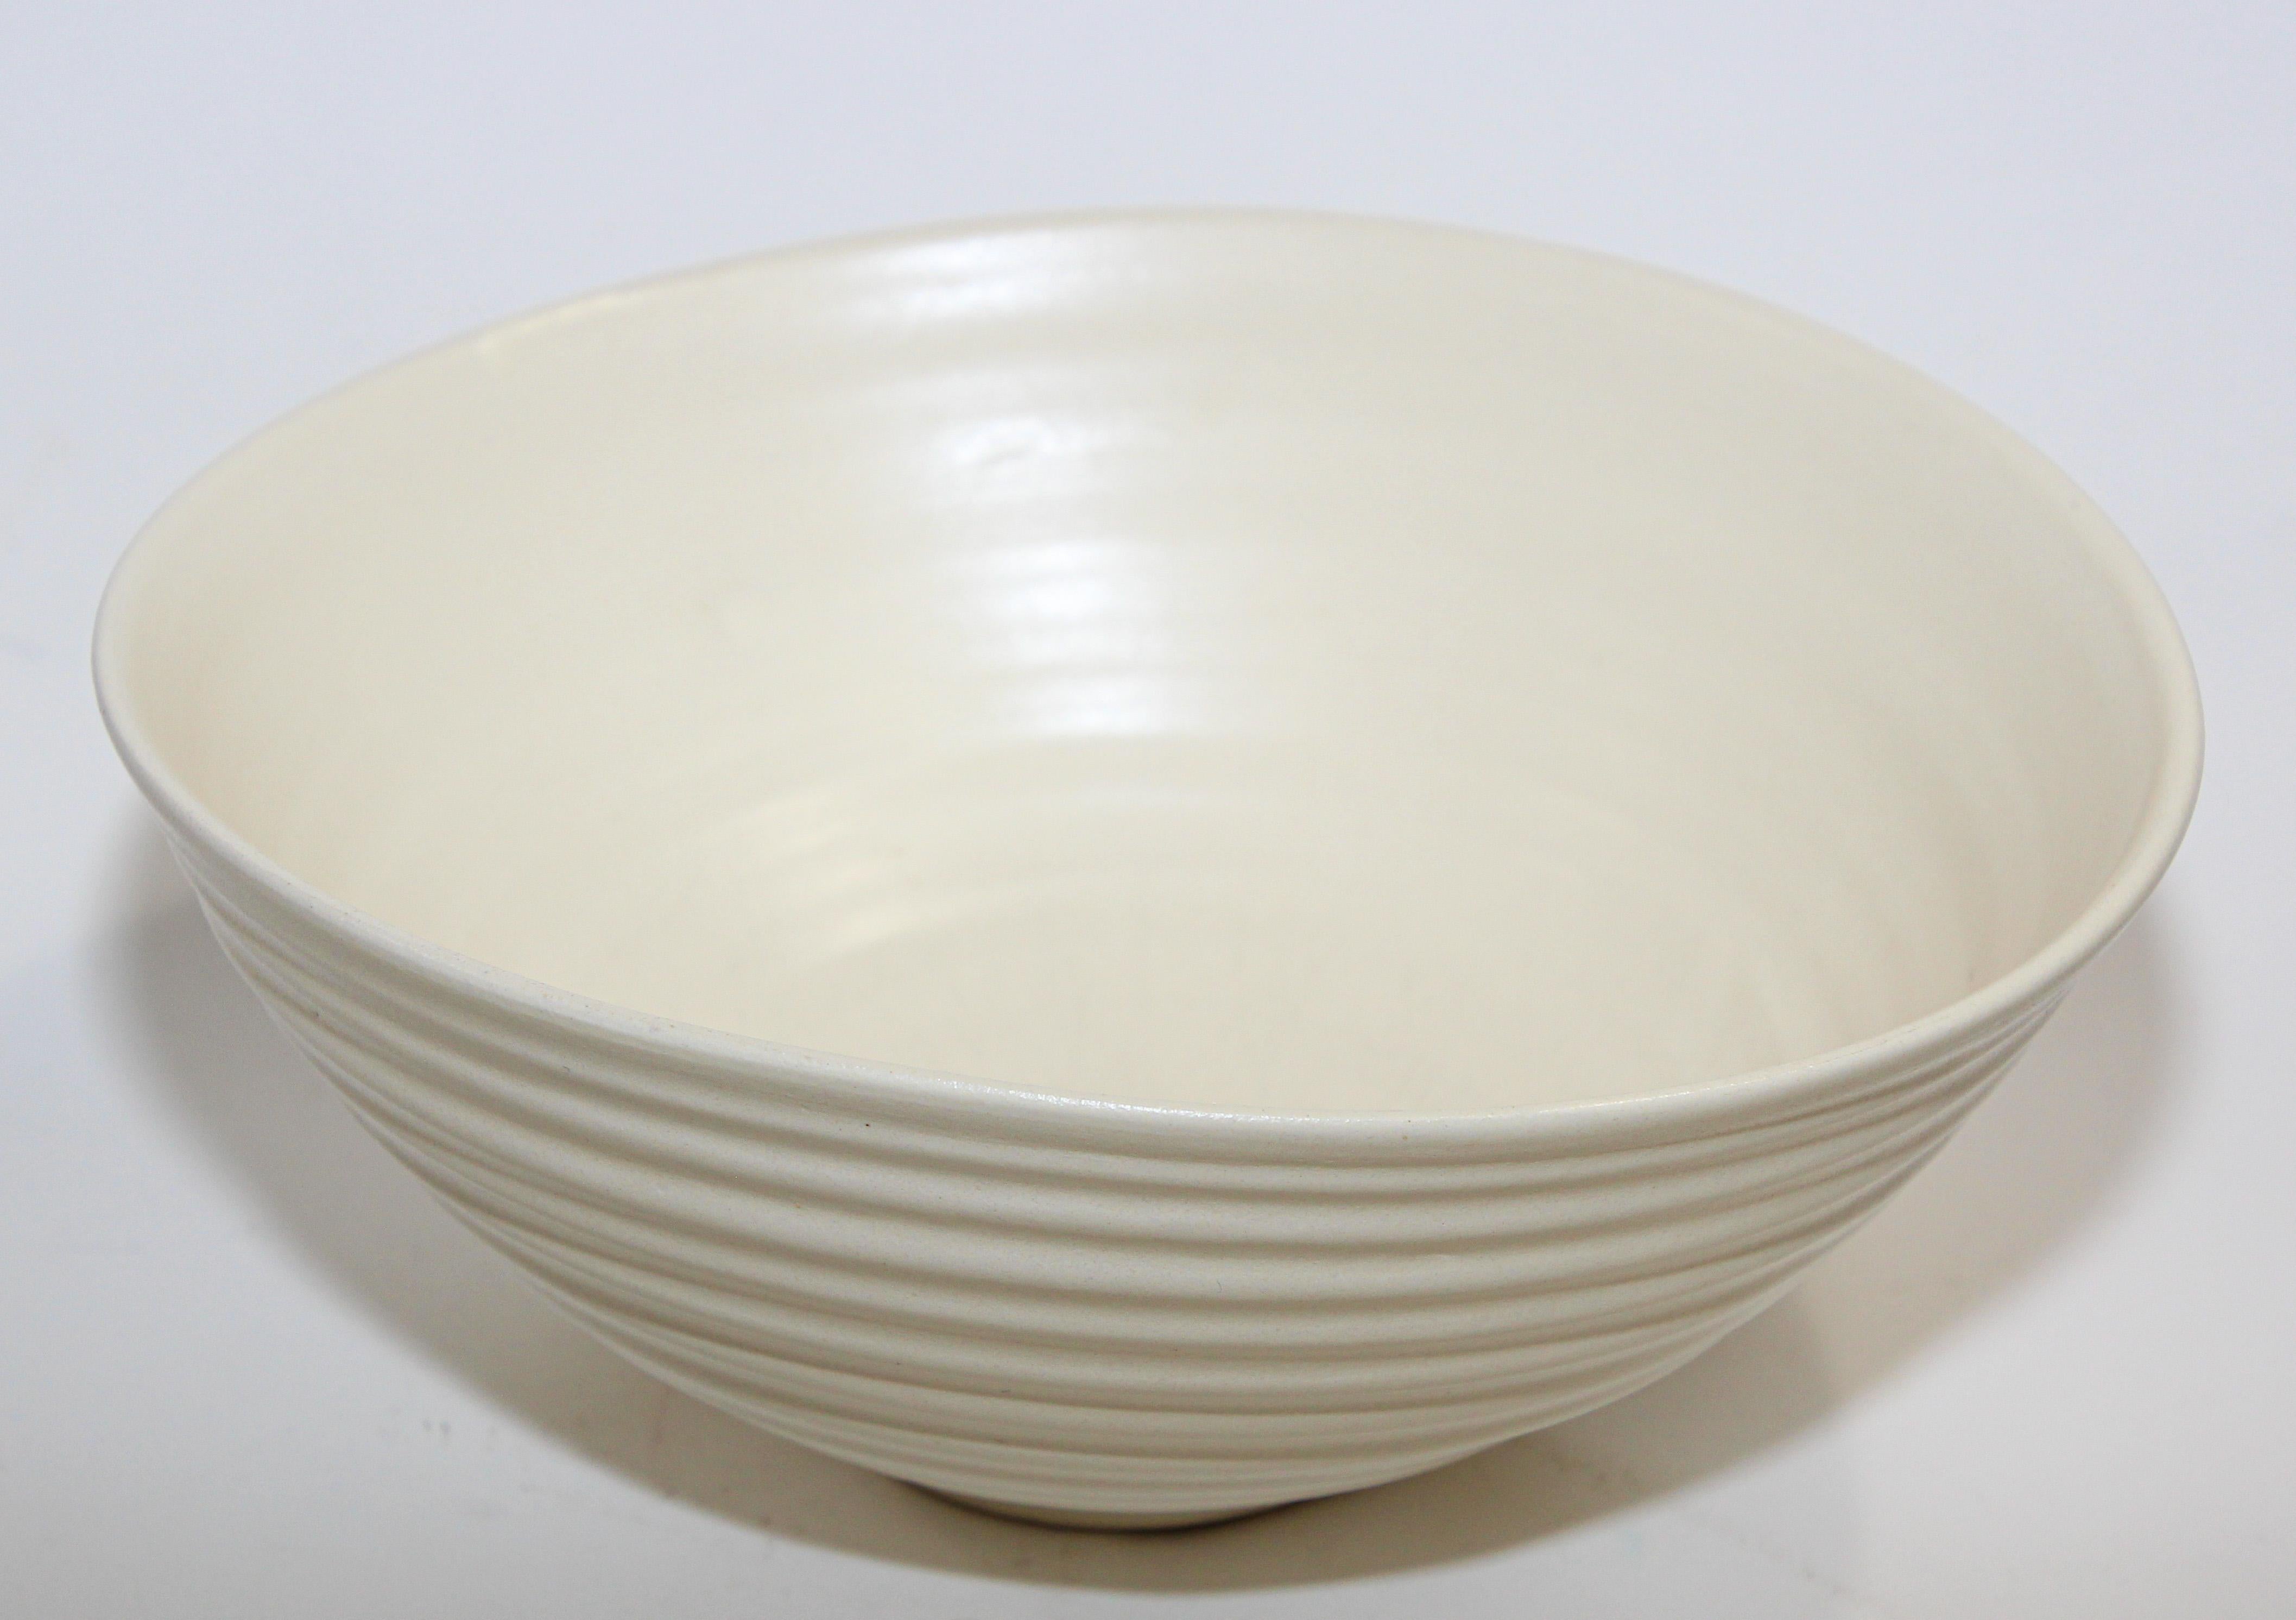 Simon Moore studio hand made ceramic, pottery bowl, free form.
Couleur blanche, signé.
Style japonais, très délicat et léger.